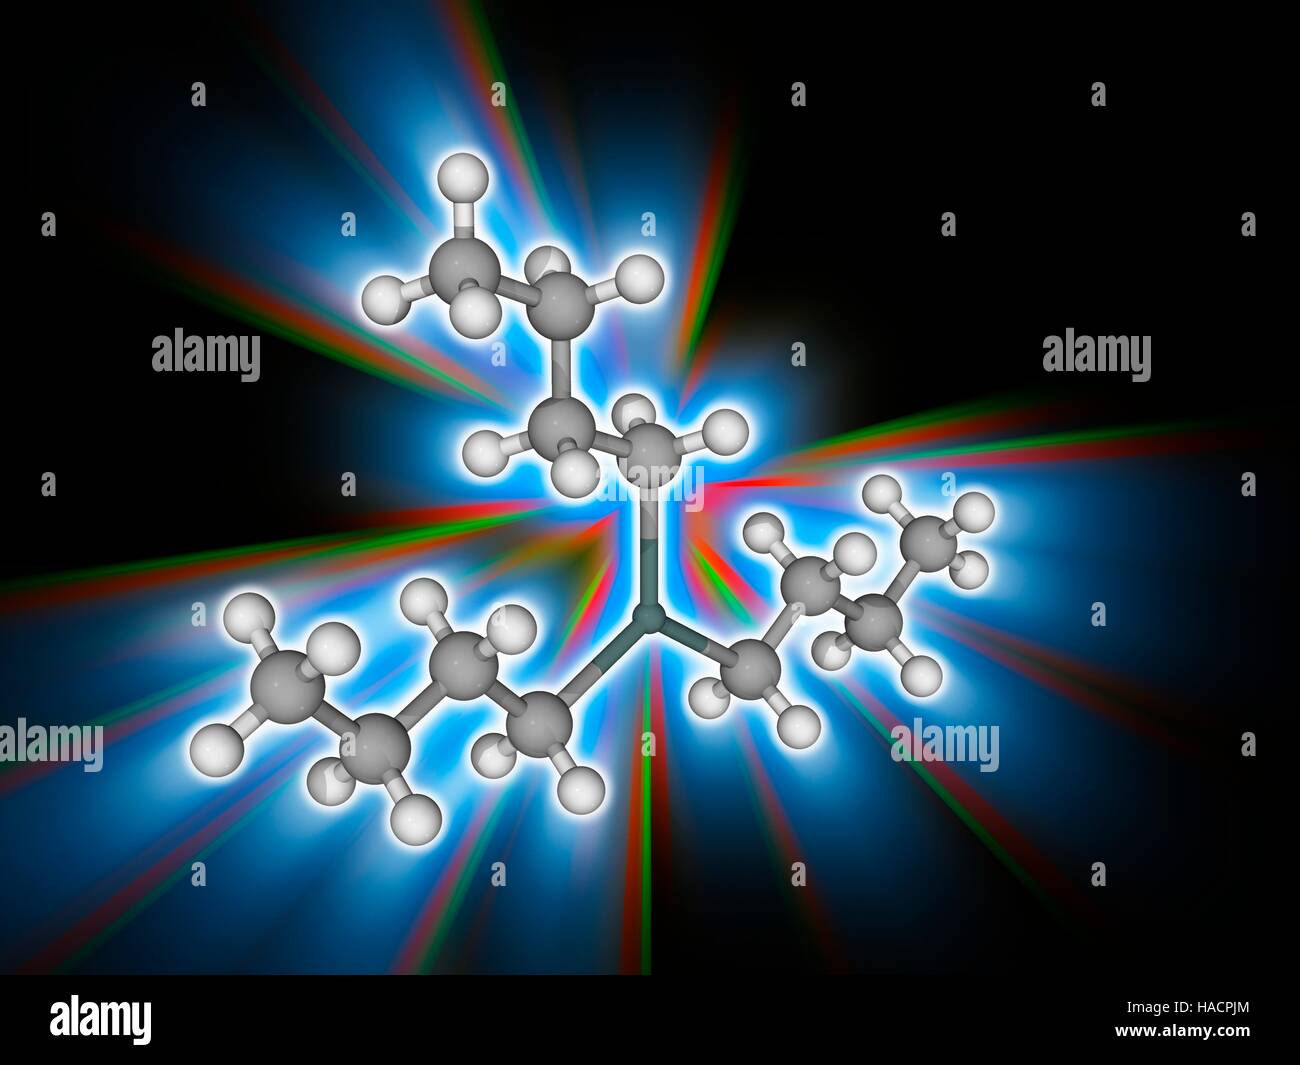 Tributyltin Hydride. Molekulares Modell des Zinn-haltige organische Verbindung Tributyltin Hydride (Sn.C12.H28). Diese farblose Flüssigkeit ist als Quelle von Wasserstoff-Atomen in der organischen Synthese verwendet. Atome als Kugeln dargestellt werden und sind farblich gekennzeichnet: Zinn (dunkelgrün), Kohlenstoff (grau) und Wasserstoff (weiß). Abbildung. Stockfoto